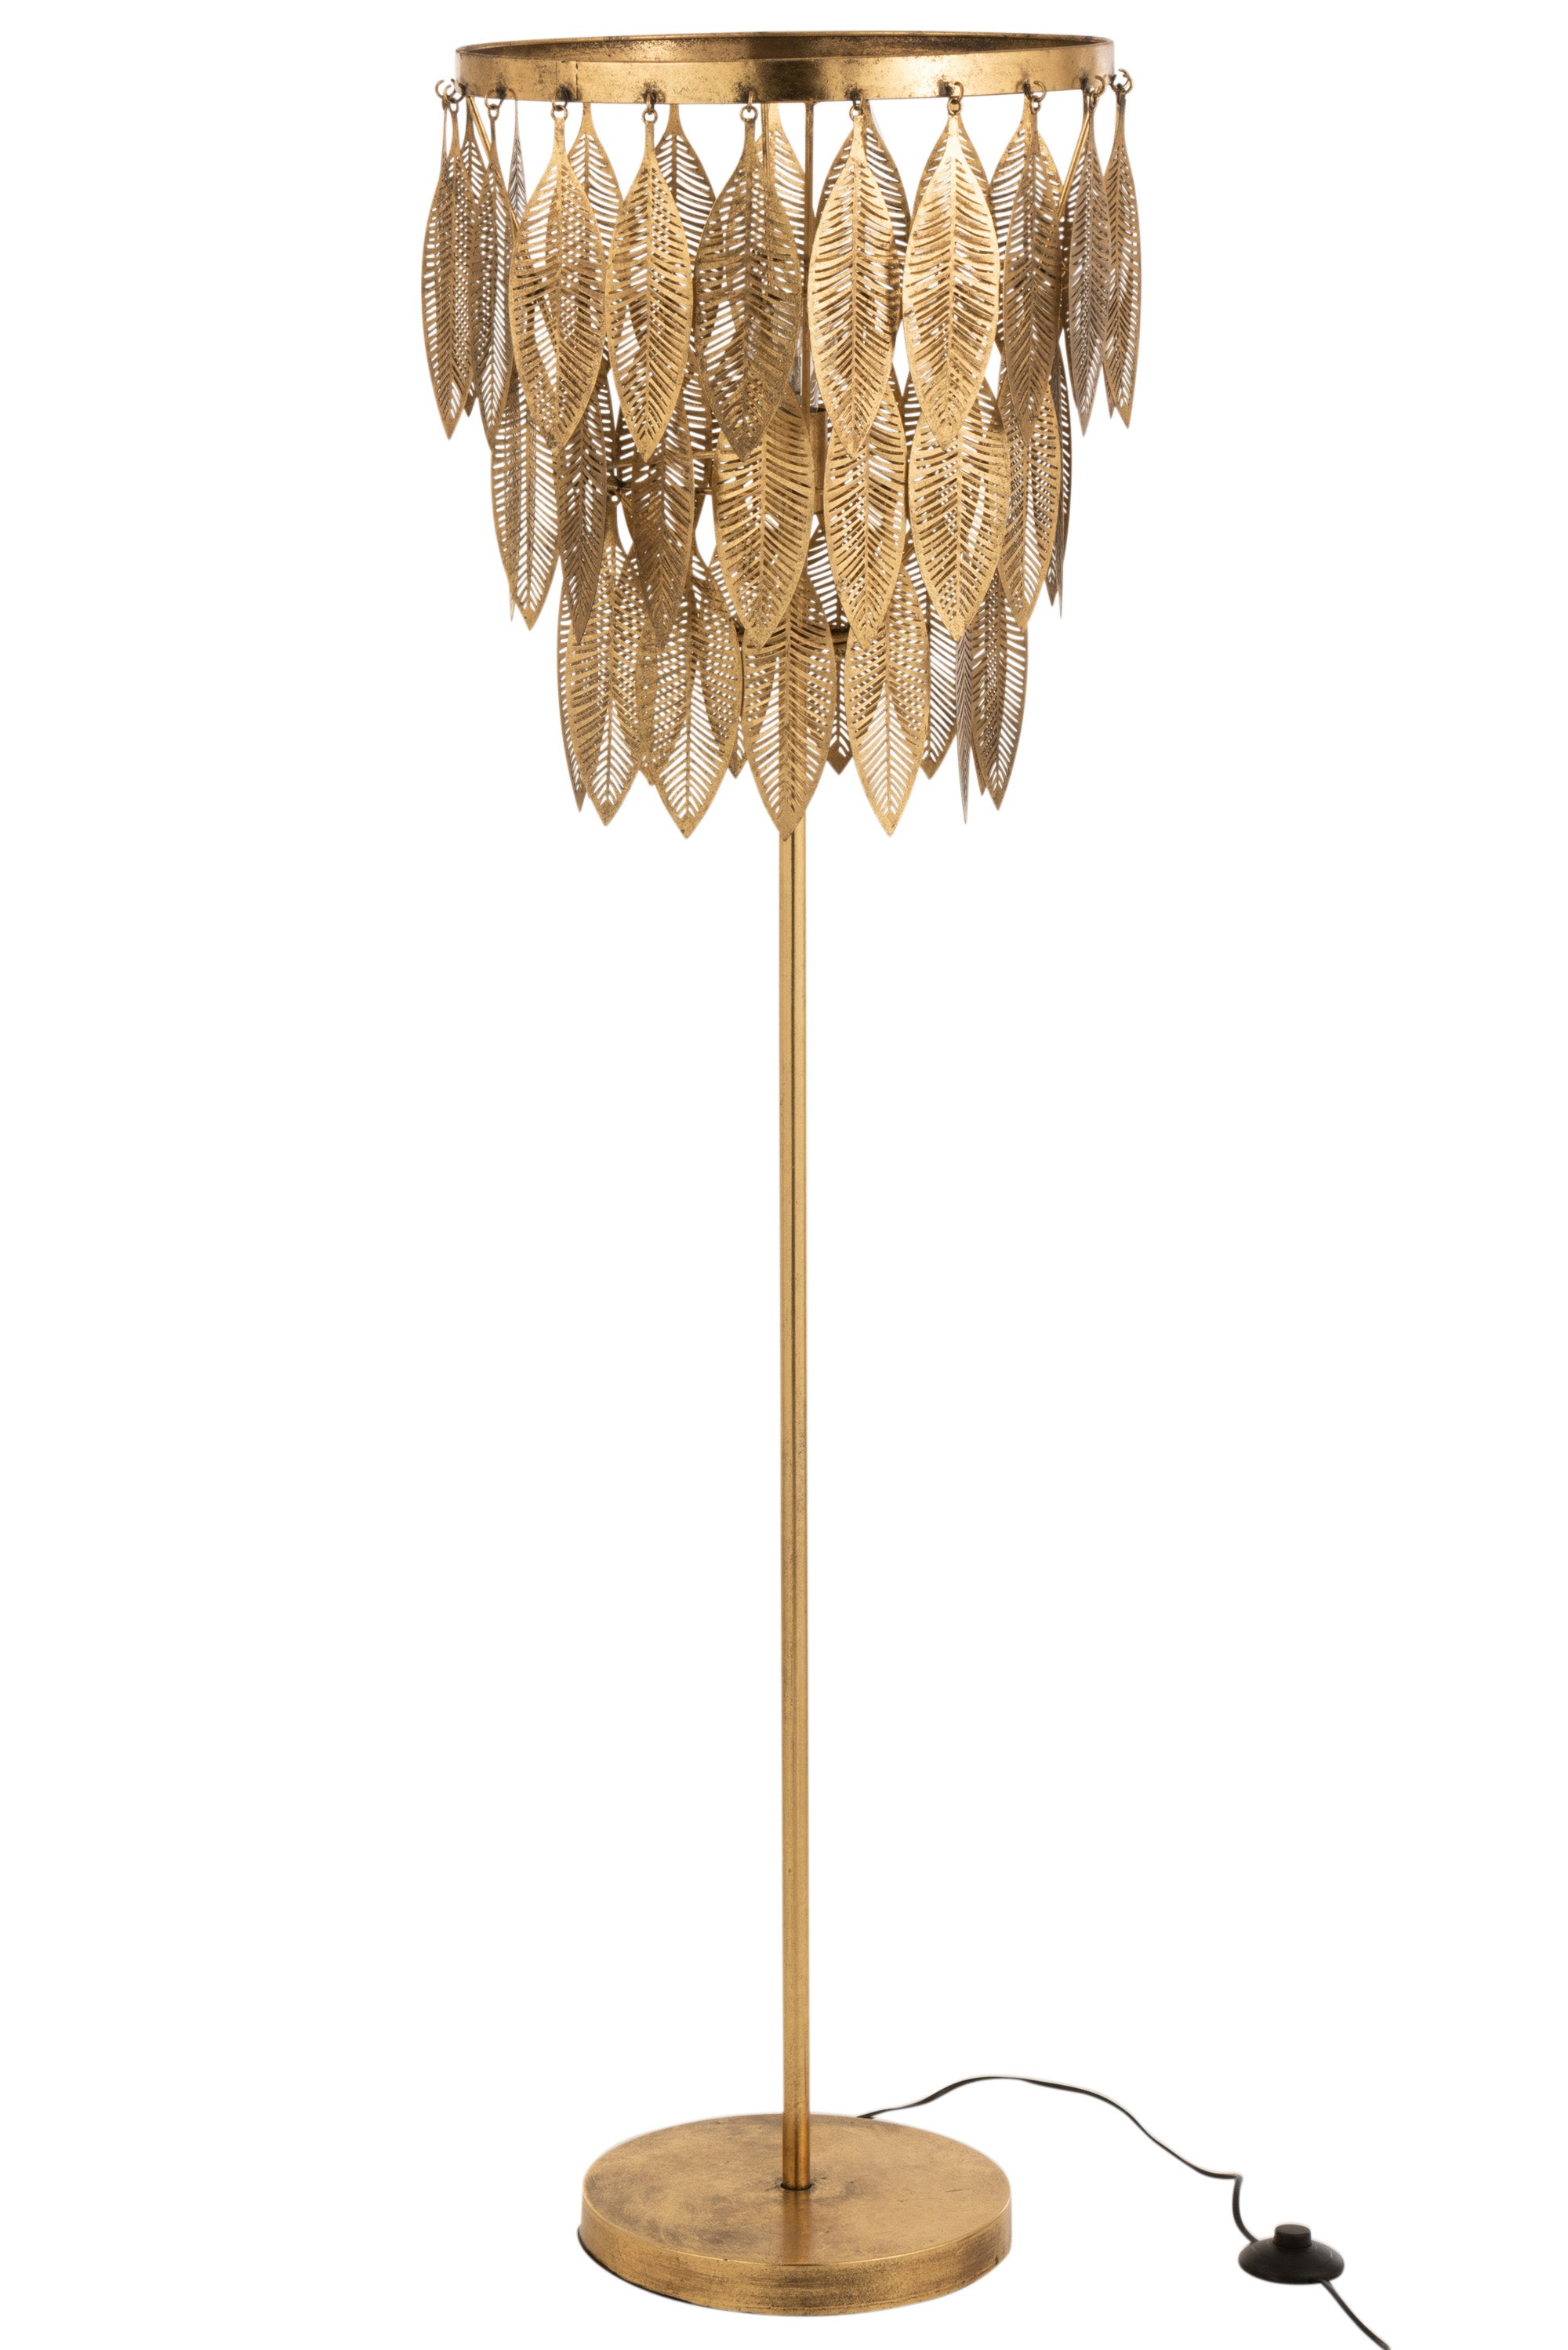 Goldfarbene Stehlampe mit einem runden Sockel mit einem langen Metallstiel, darauf ein Lampenschirm aus drei, von unten nach oben größer werdenden Metallringen, an denen freischwingend, längliche, filigrane Metallblätter hängen.